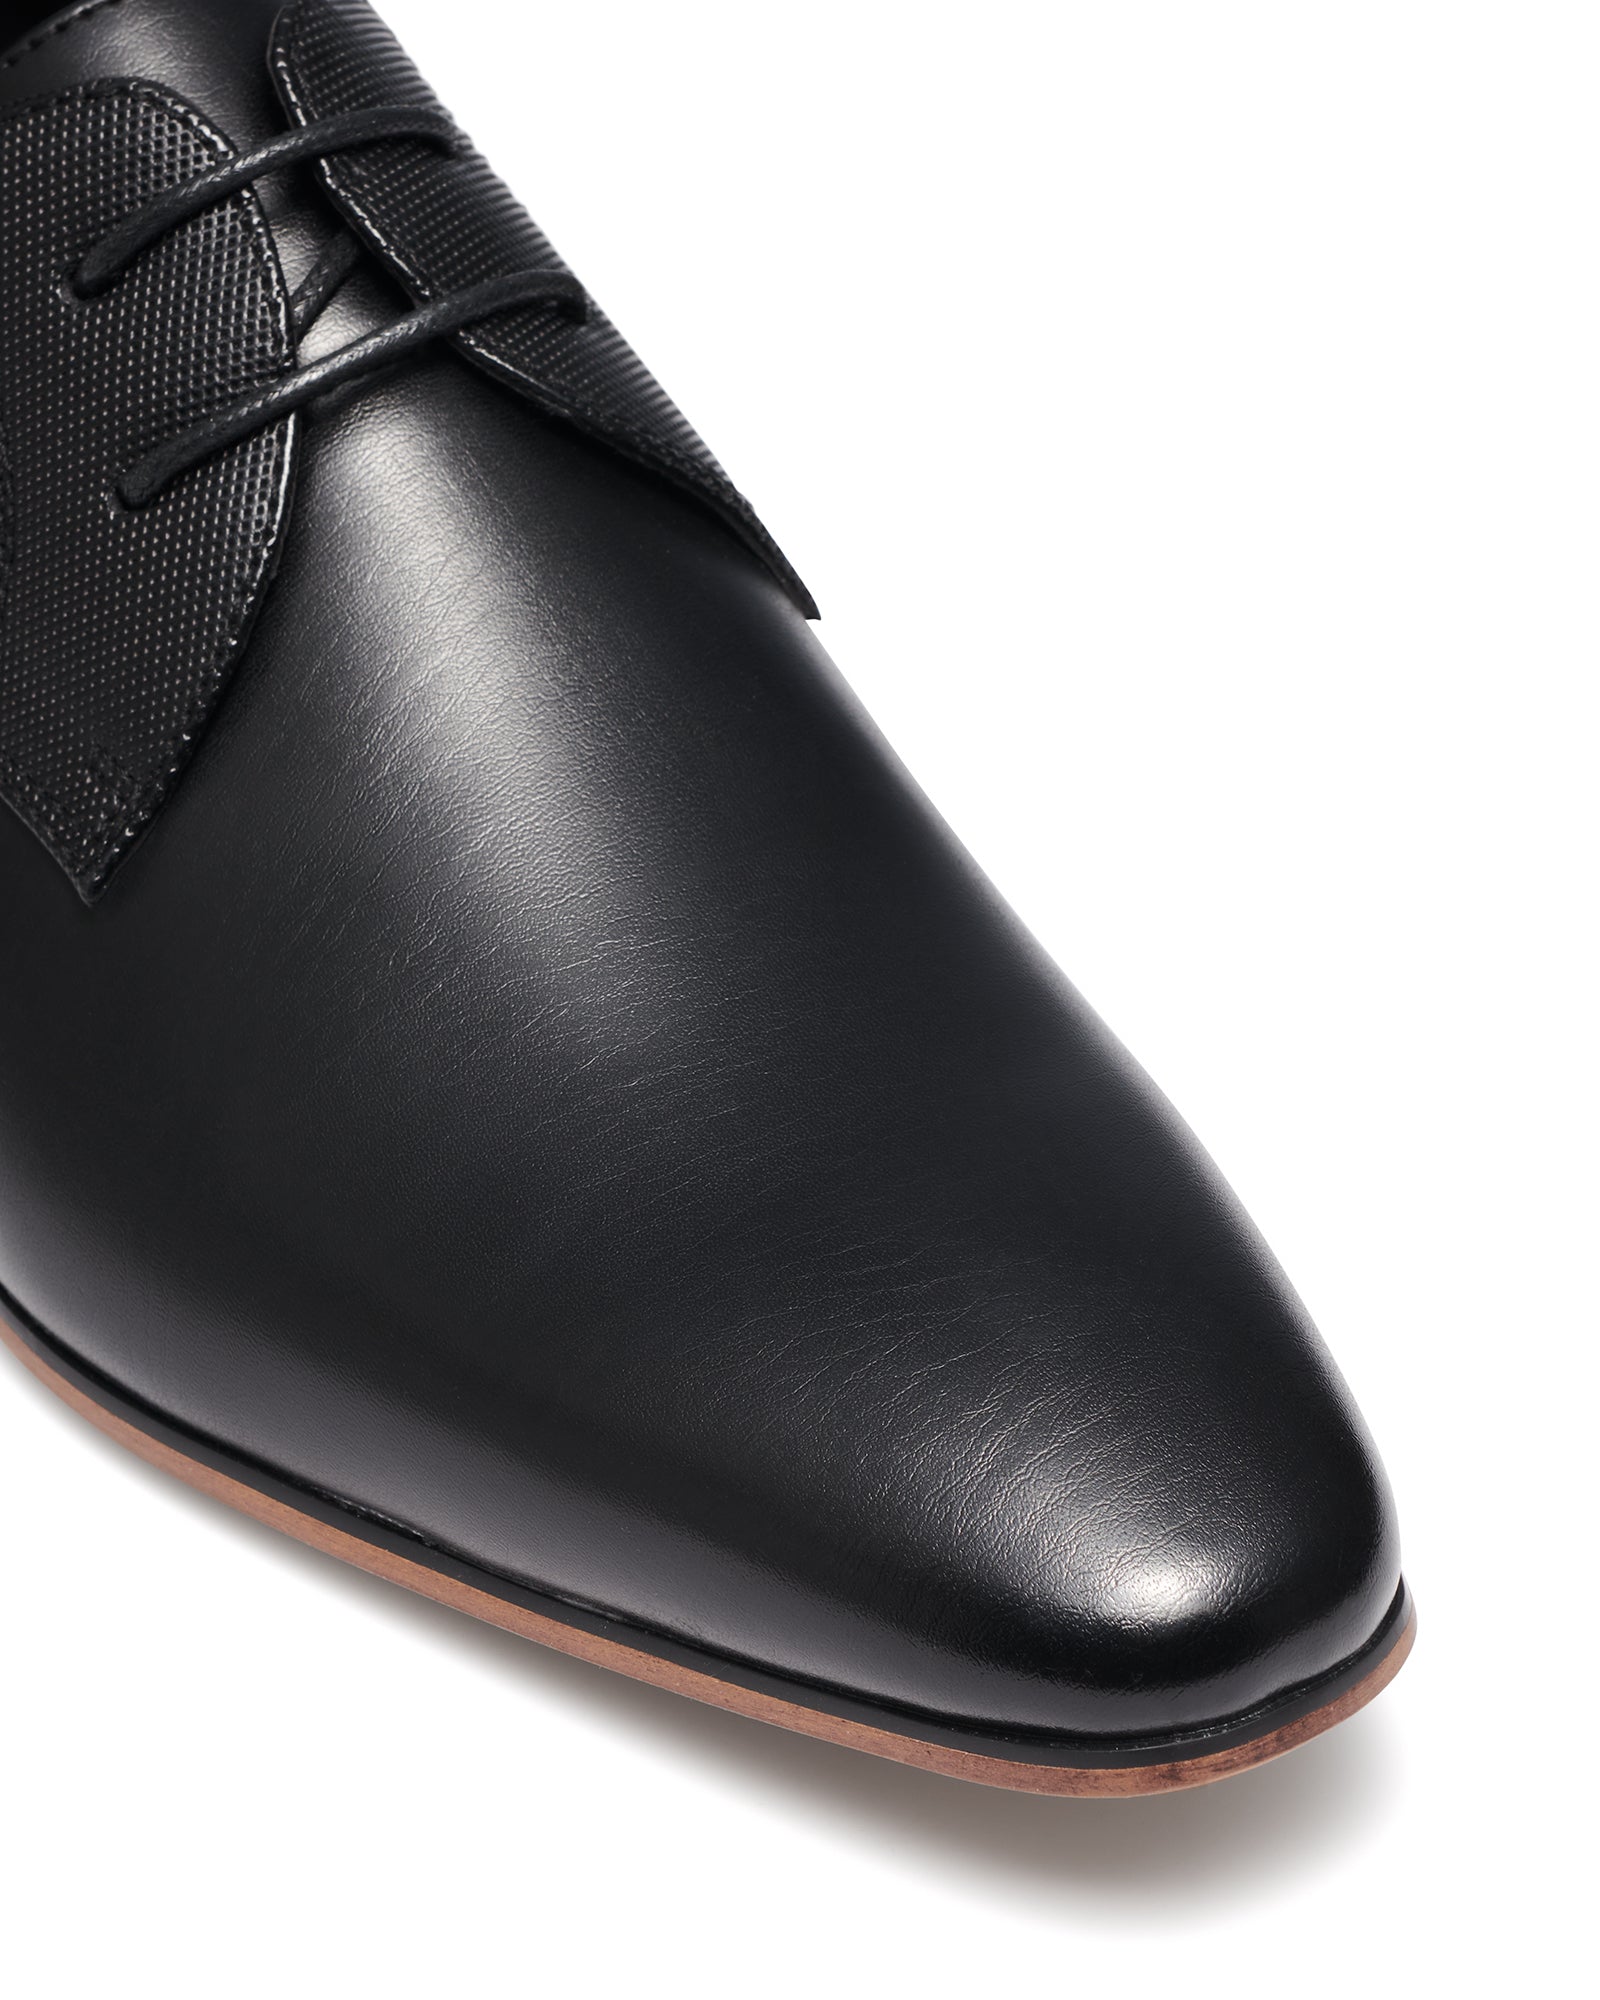 Uncut Shoes Chartwell Black | Men's Dress Shoe | Derby | Lace Up | Work